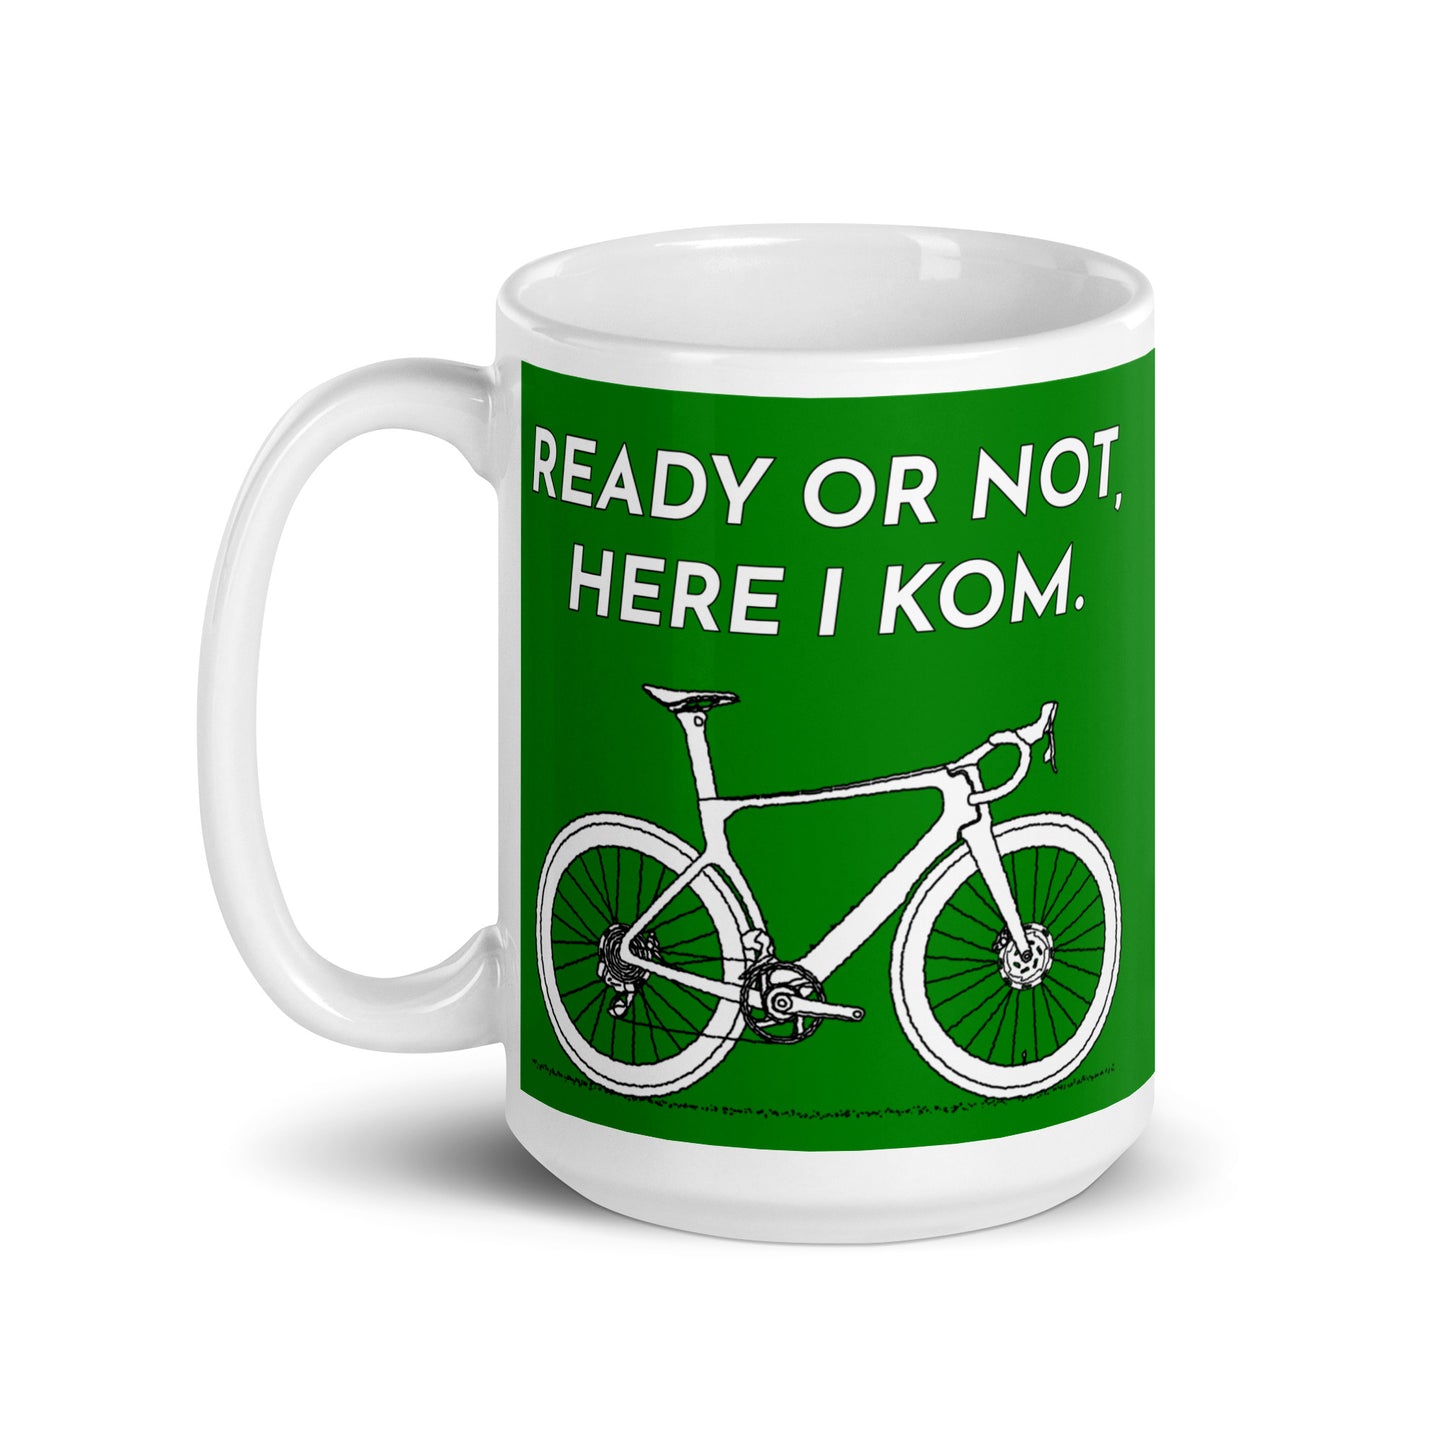 Ready Or Not Here I KOM, Green Road Bike Mug M074